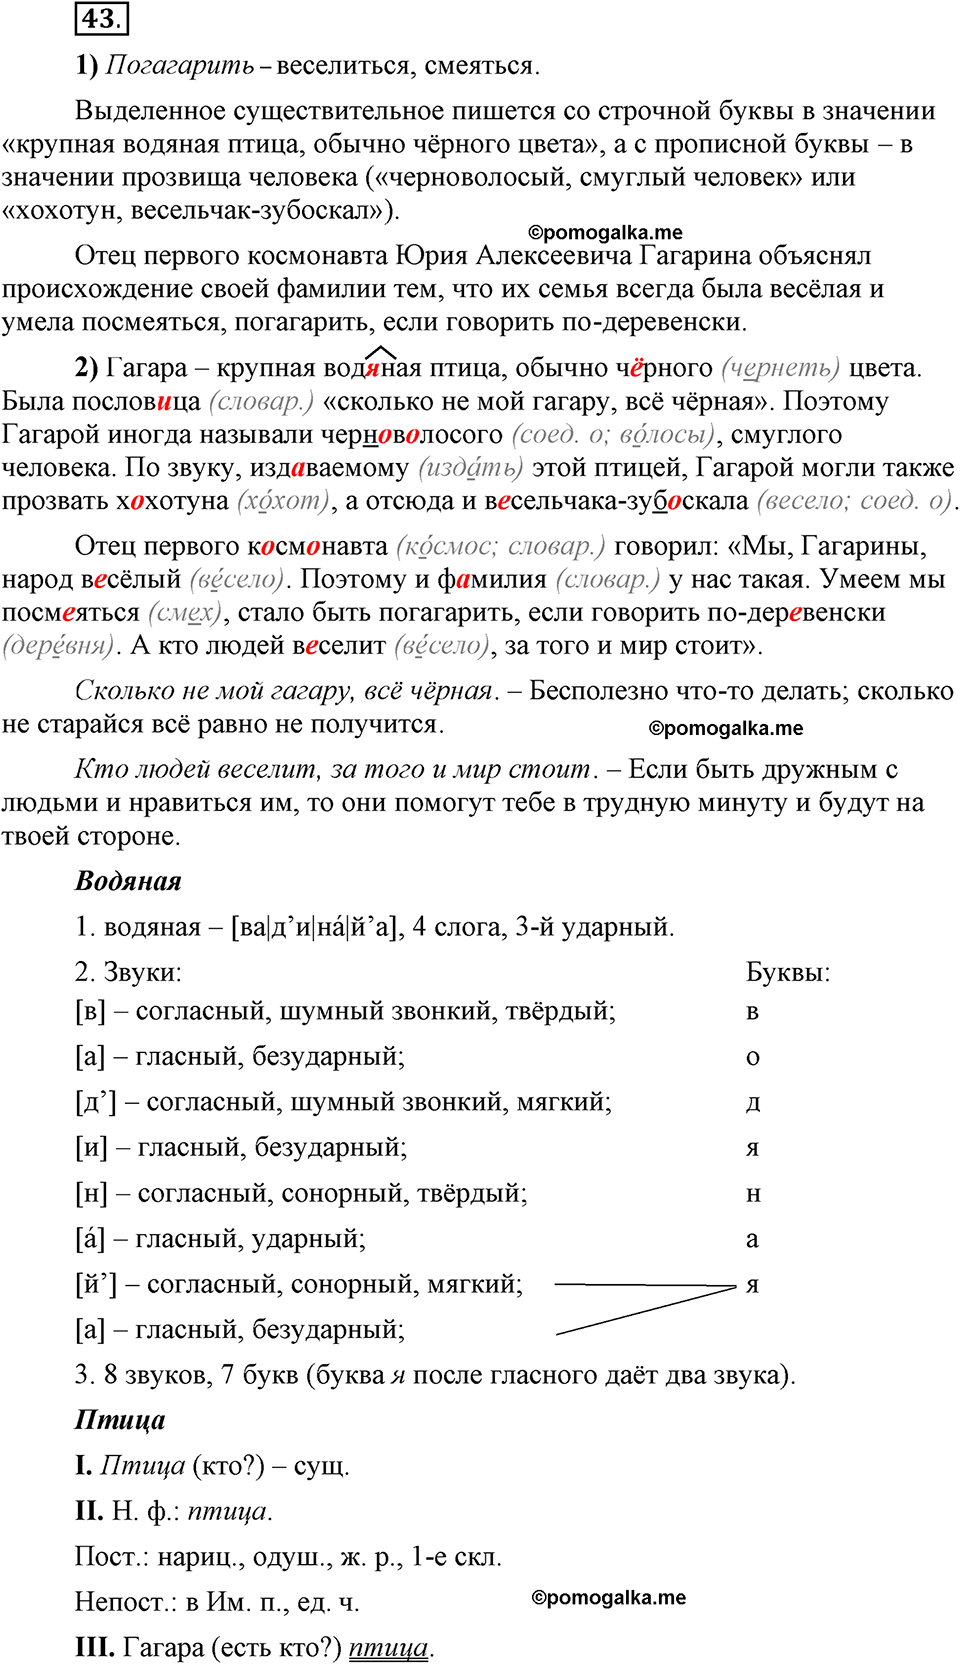 Глава 4. Упражнение №43 русский язык 6 класс Шмелёв